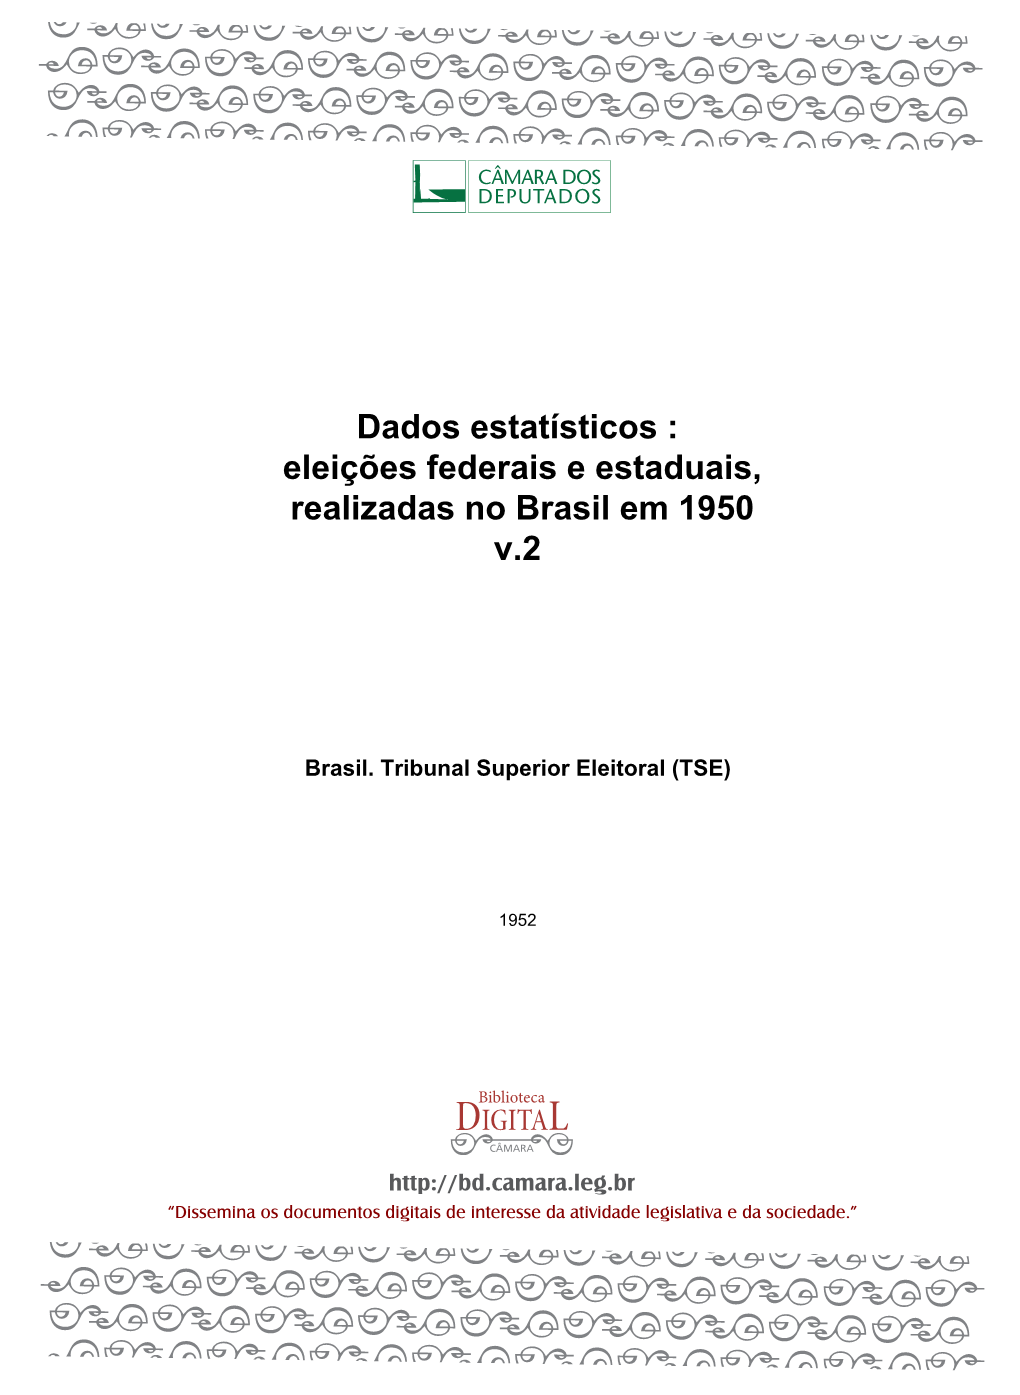 Eleições Federais E Estaduais, Realizadas No Brasil Em 1950